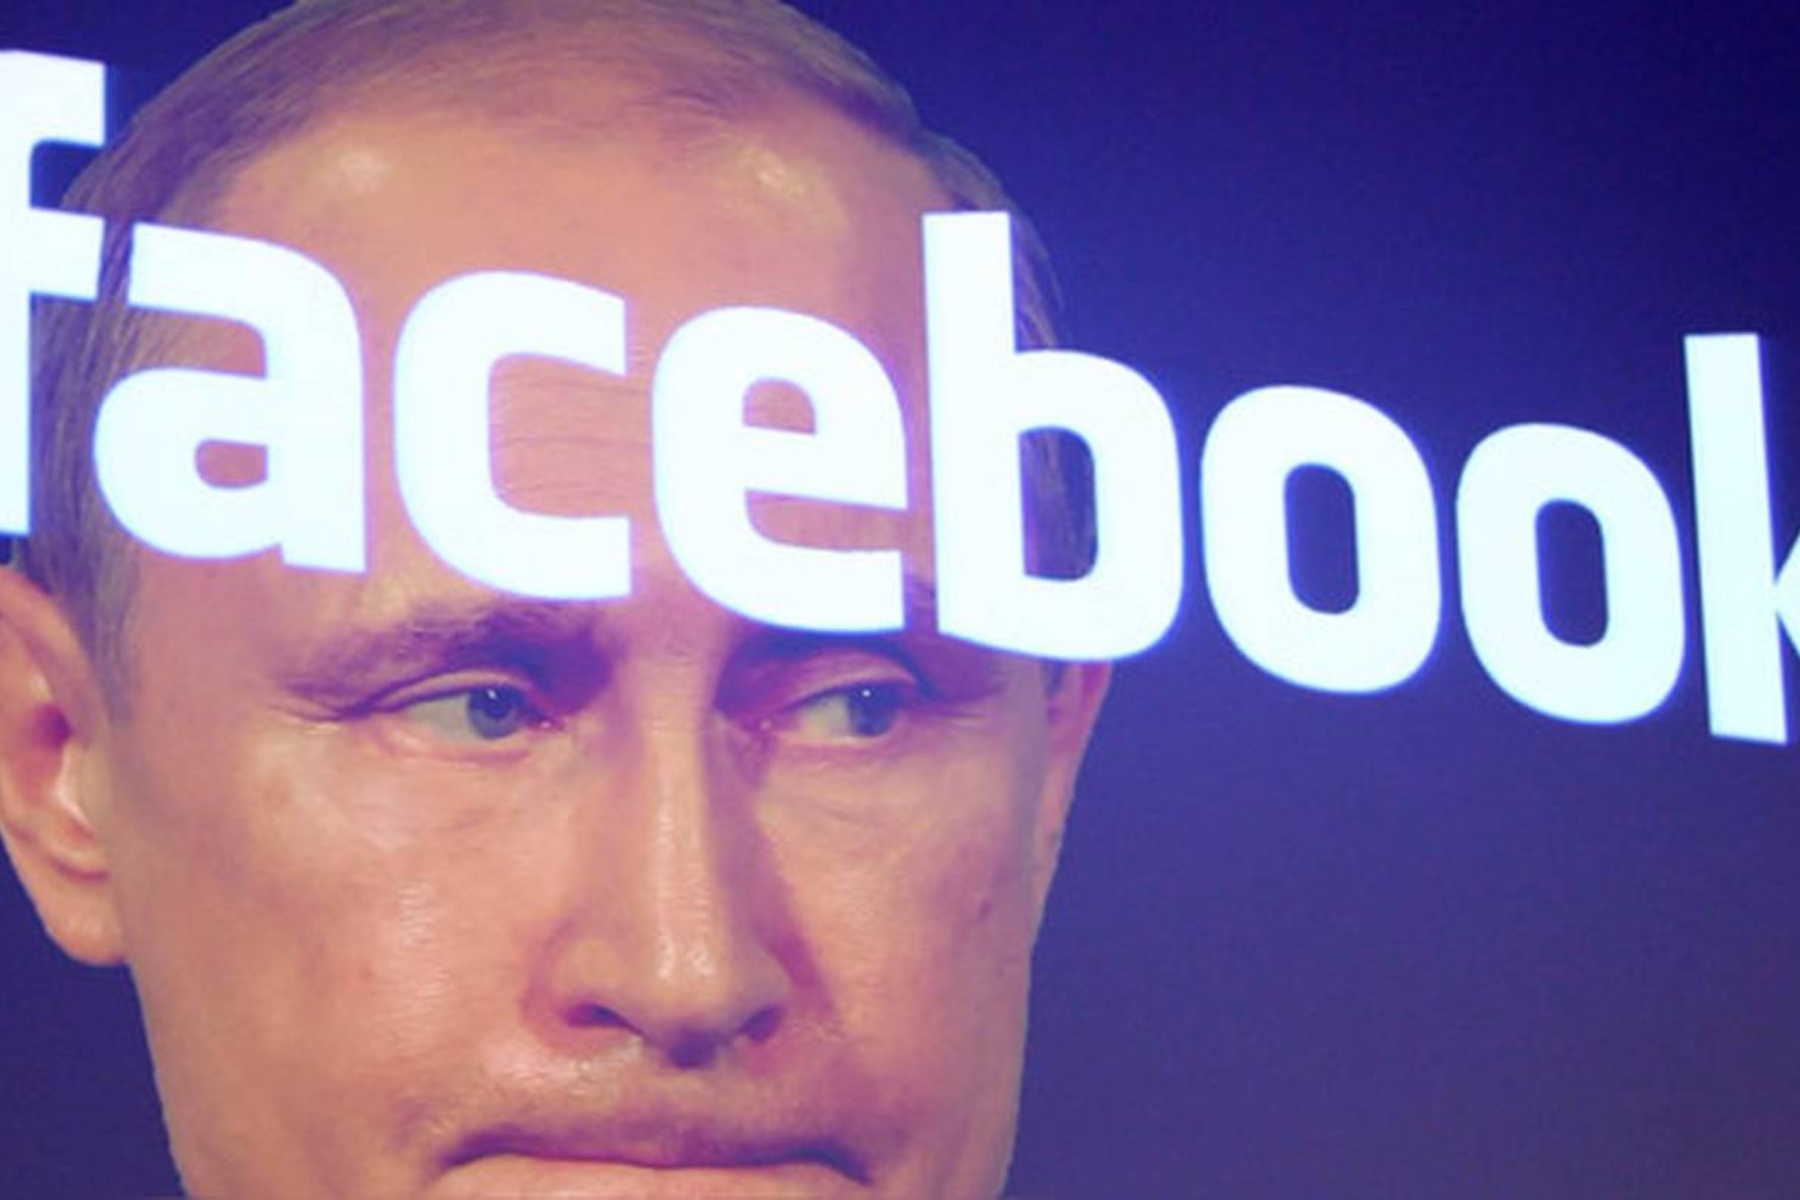 Rusia restringió el uso de Facebook en el país por “censura” a medios de comunicación